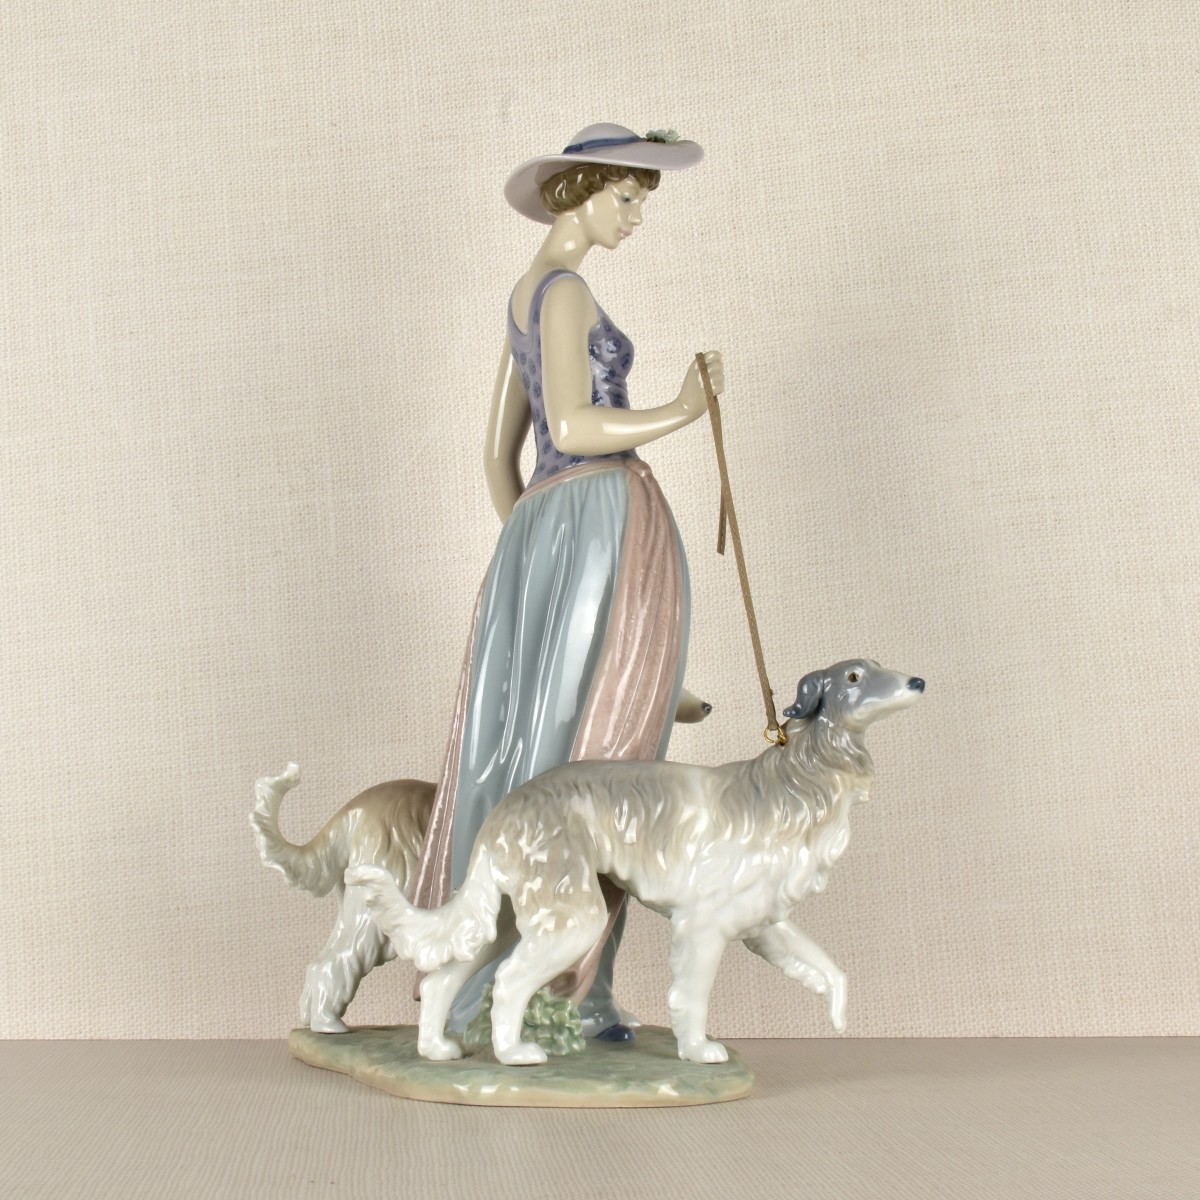 Lladro Figurine of a Lady